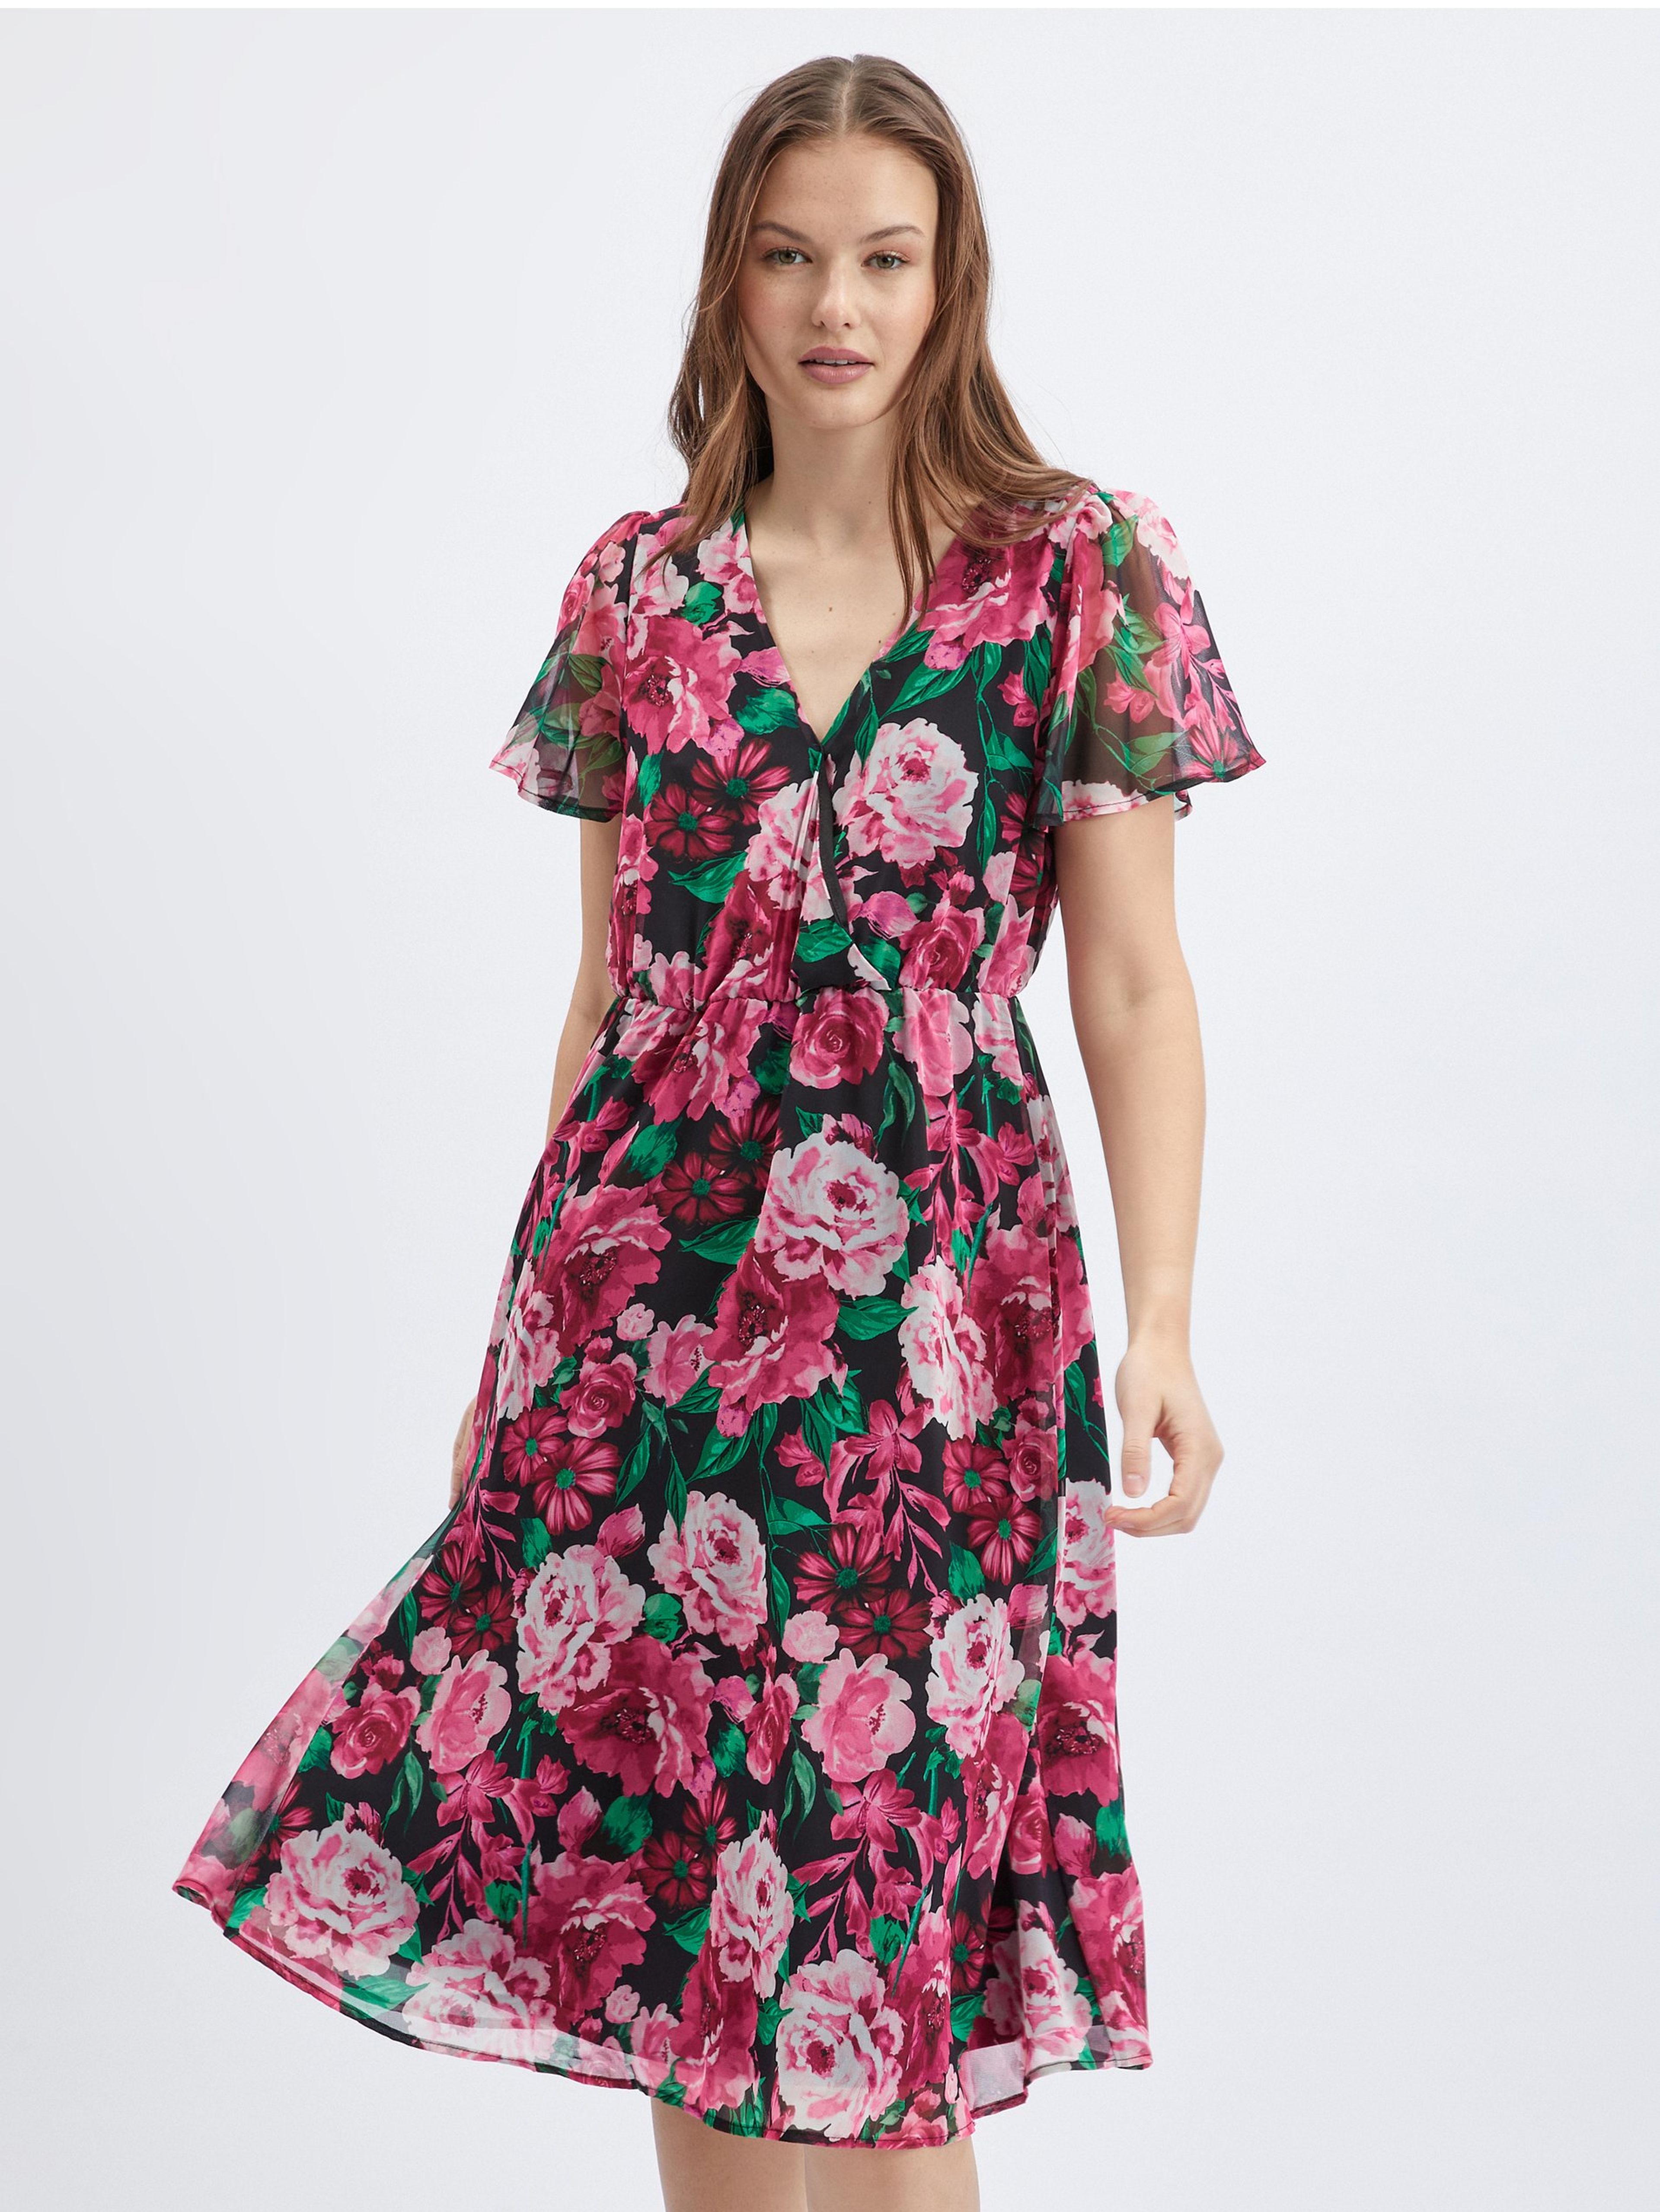 Czarno-różowa damska sukienka w kwiaty ORSAY